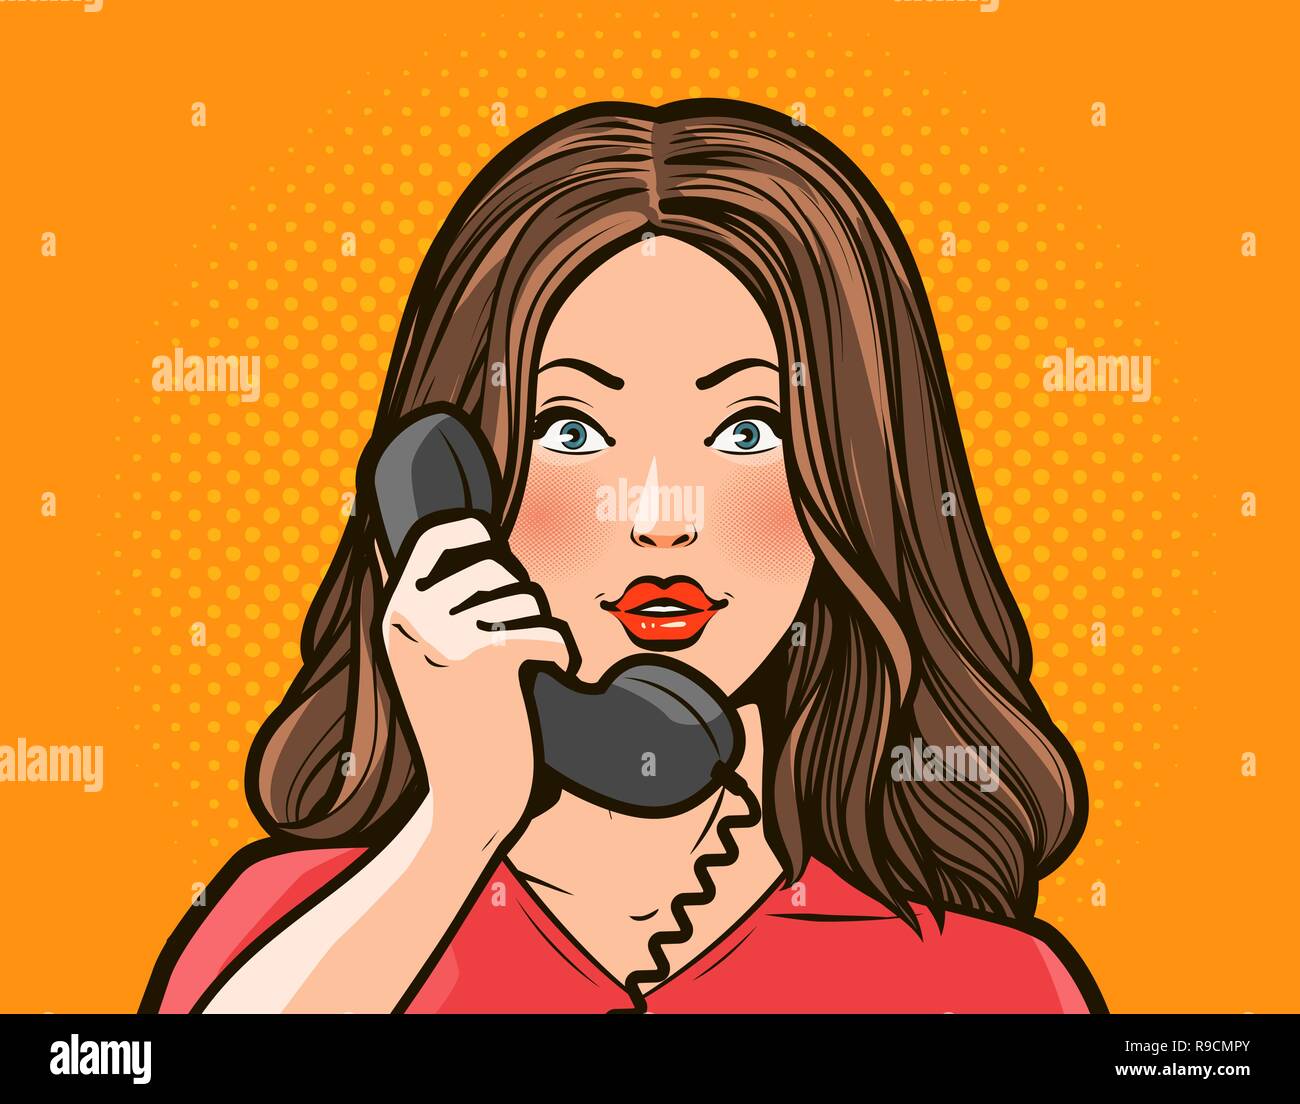 Niña o mujer joven hablando por teléfono. Conversación telefónica. Pop art comic estilo retro Ilustración del Vector